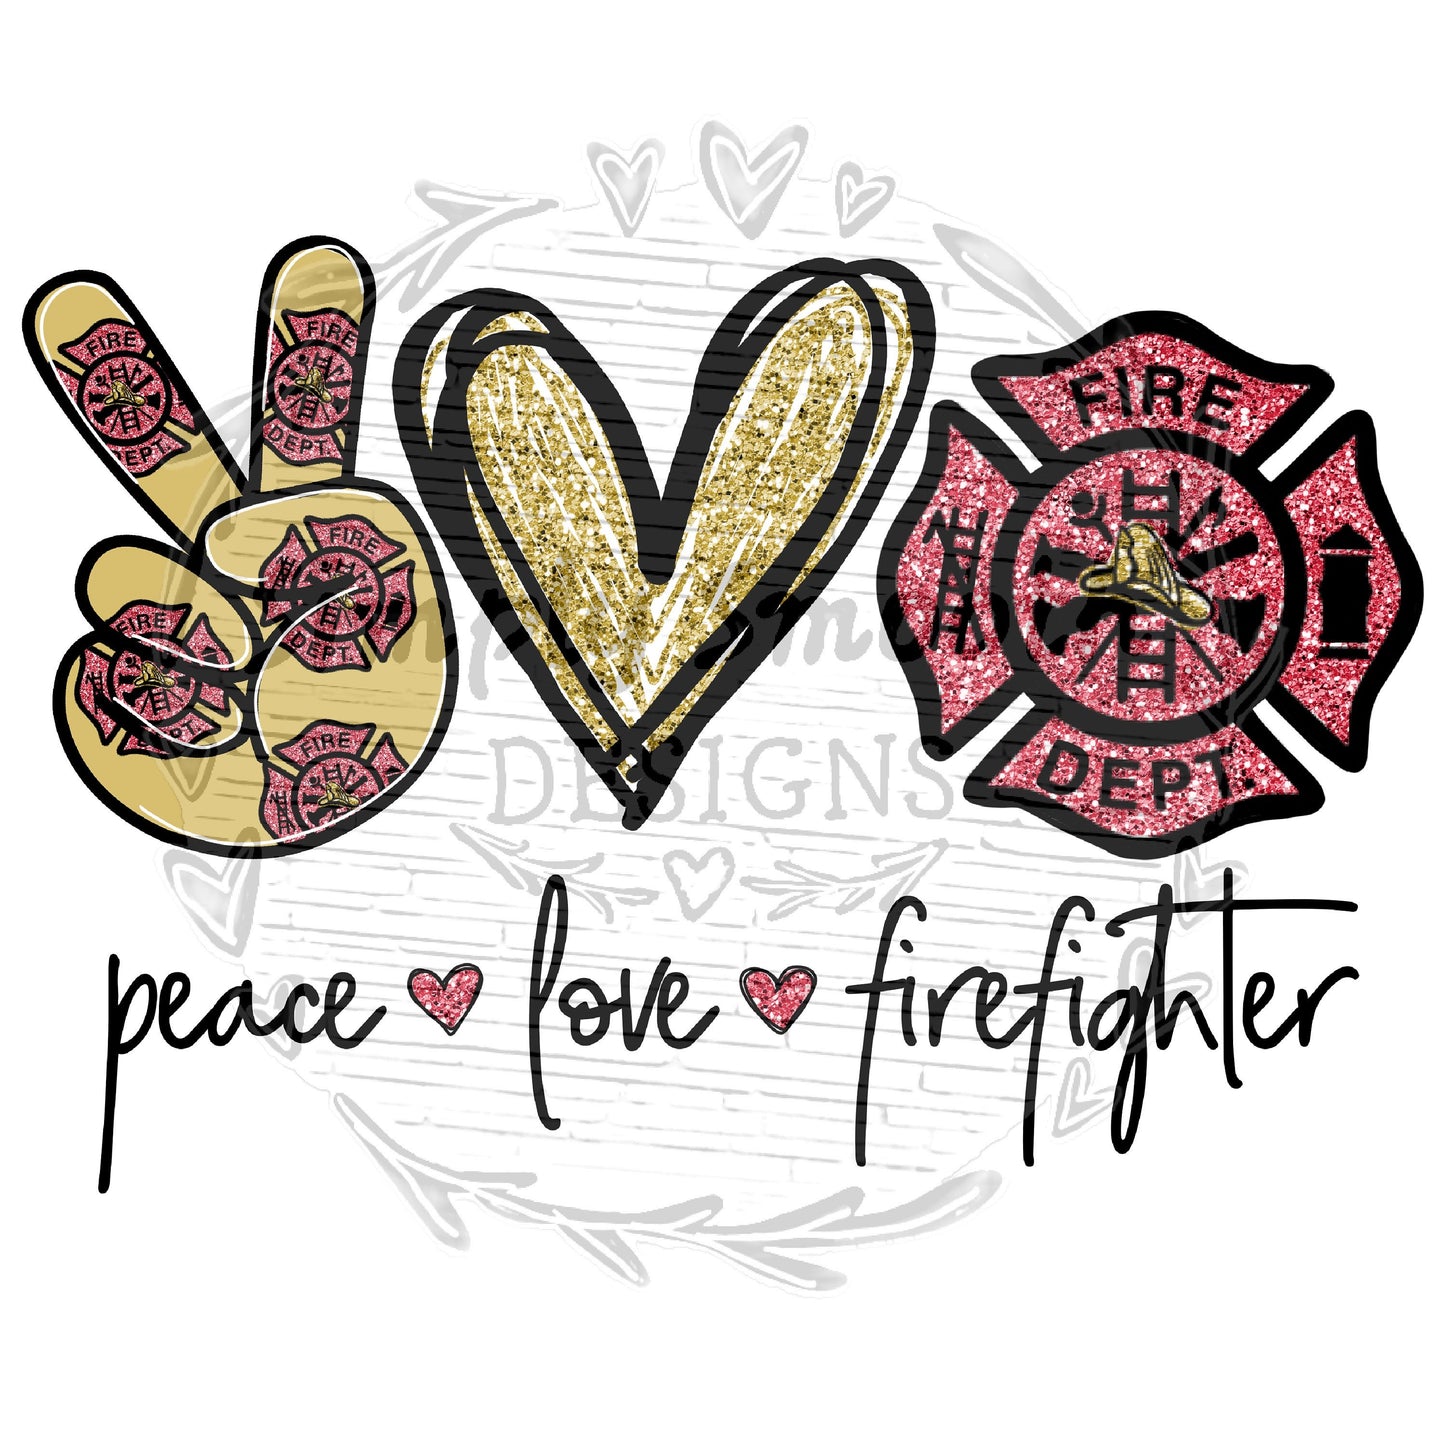 Peace love firefighter